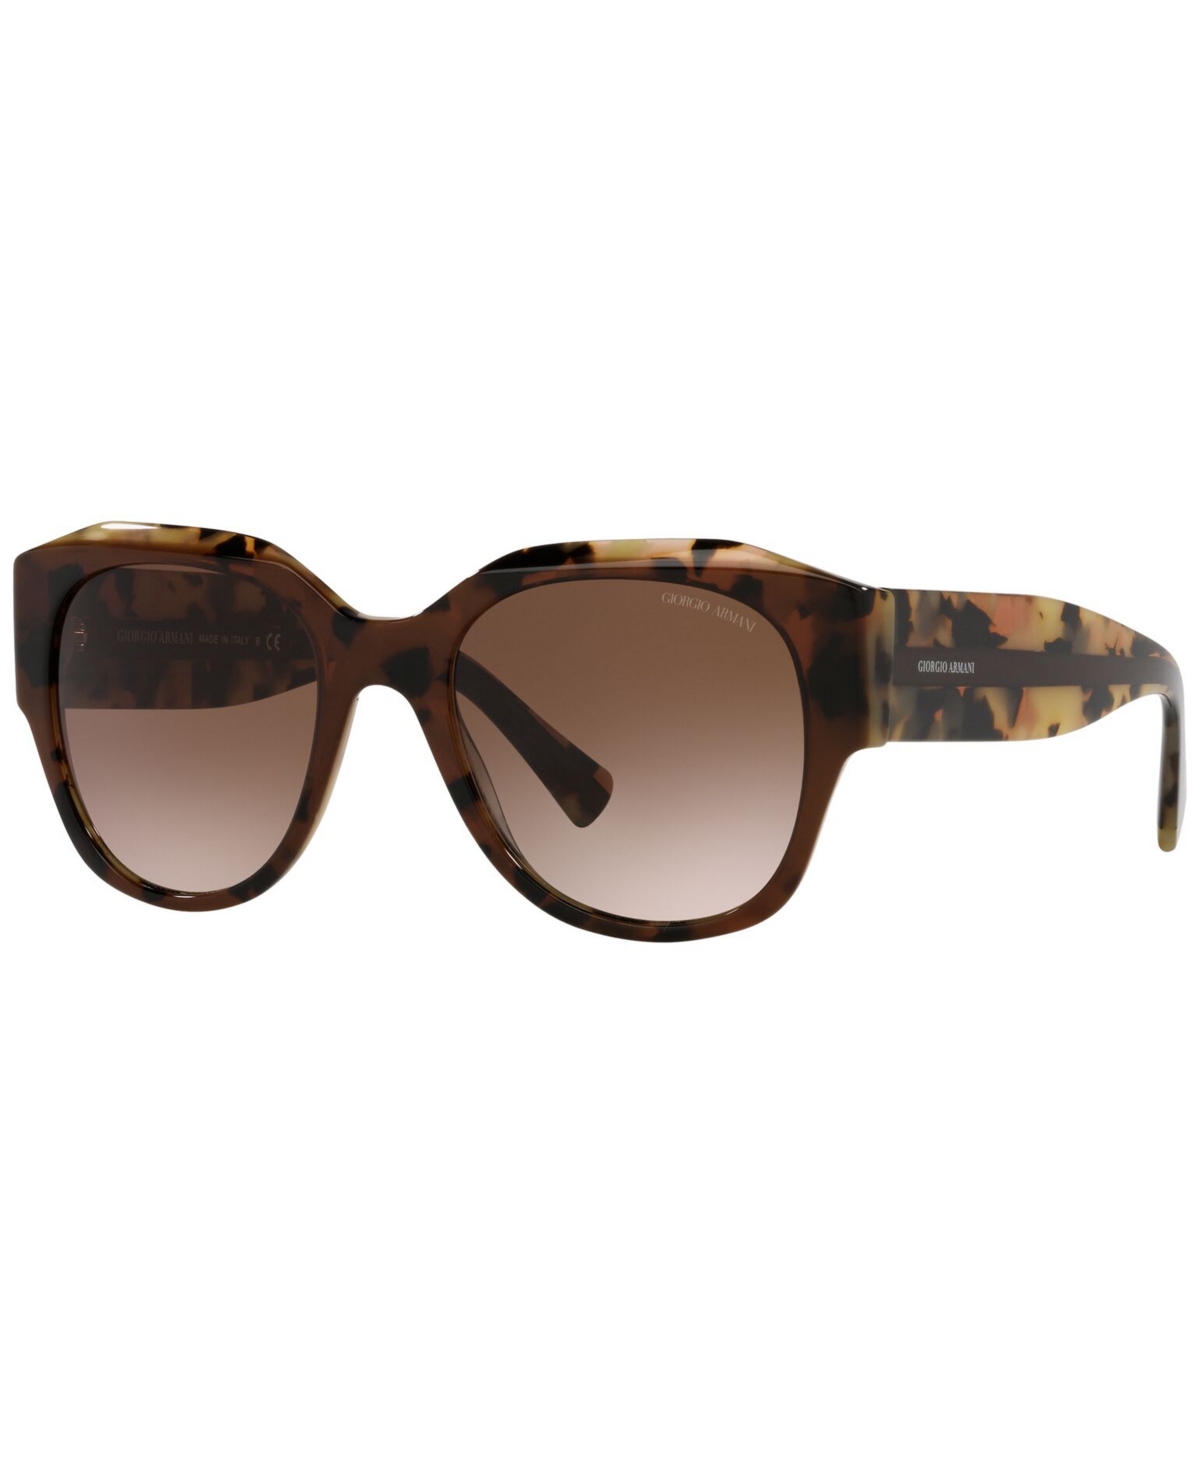 Giorgio Armani Women's Sunglasses, Ar8140 In Brown Tortoise,gradient Brown